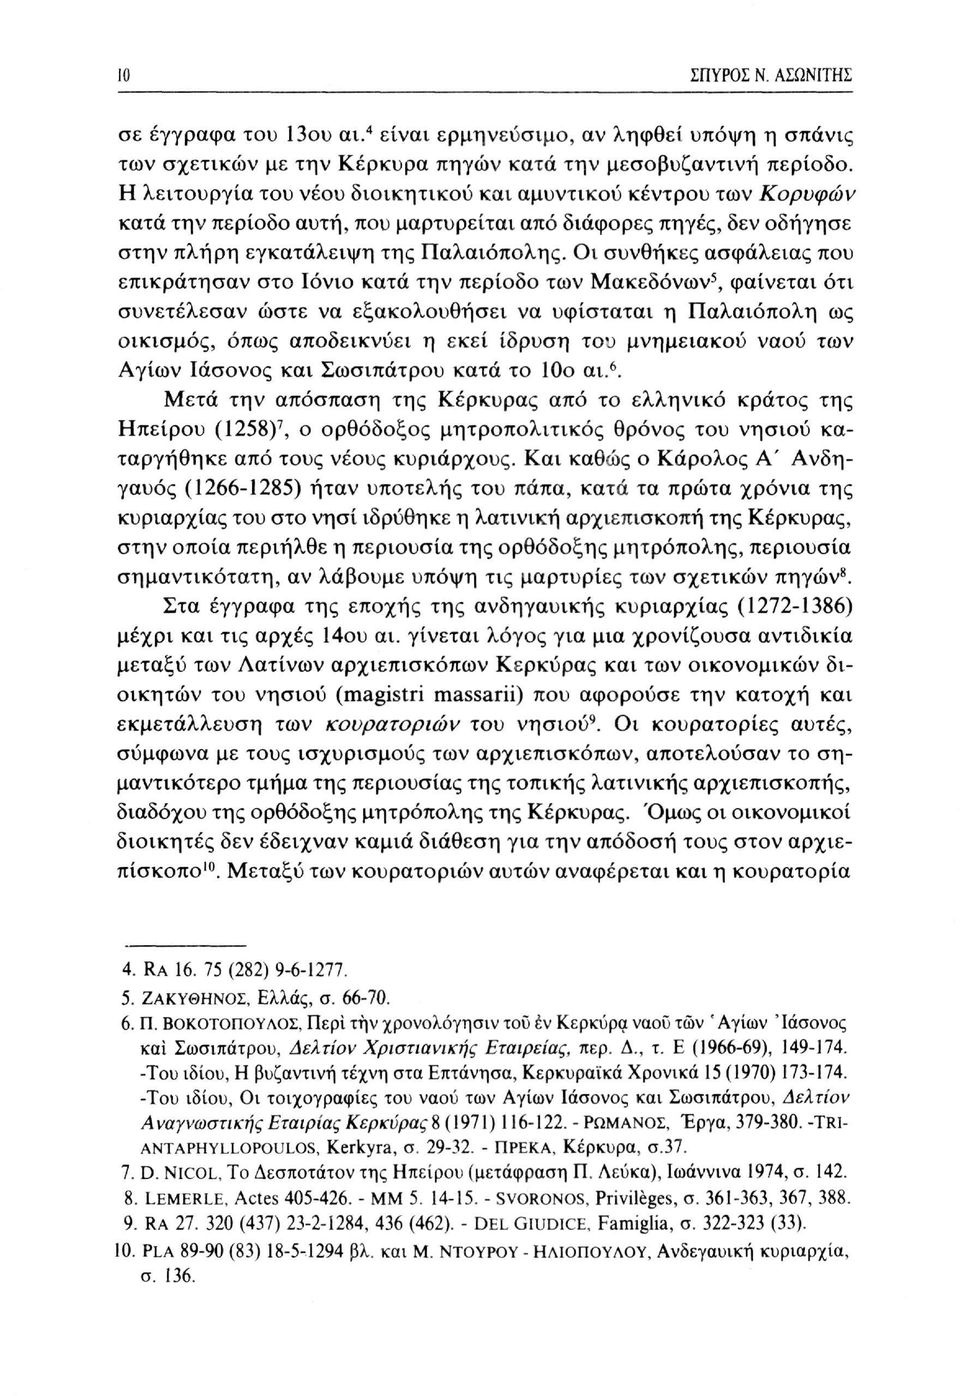 Οι συνθήκες ασφάλειας που επικράτησαν στο Ιόνιο κατά την περίοδο των Μακεδόνων 5, φαίνεται ότι συνετέλεσαν ώστε να εξακολουθήσει να υφίσταται η Παλαιόπολη ως οικισμός, όπως αποδεικνύει η εκεί ίδρυση